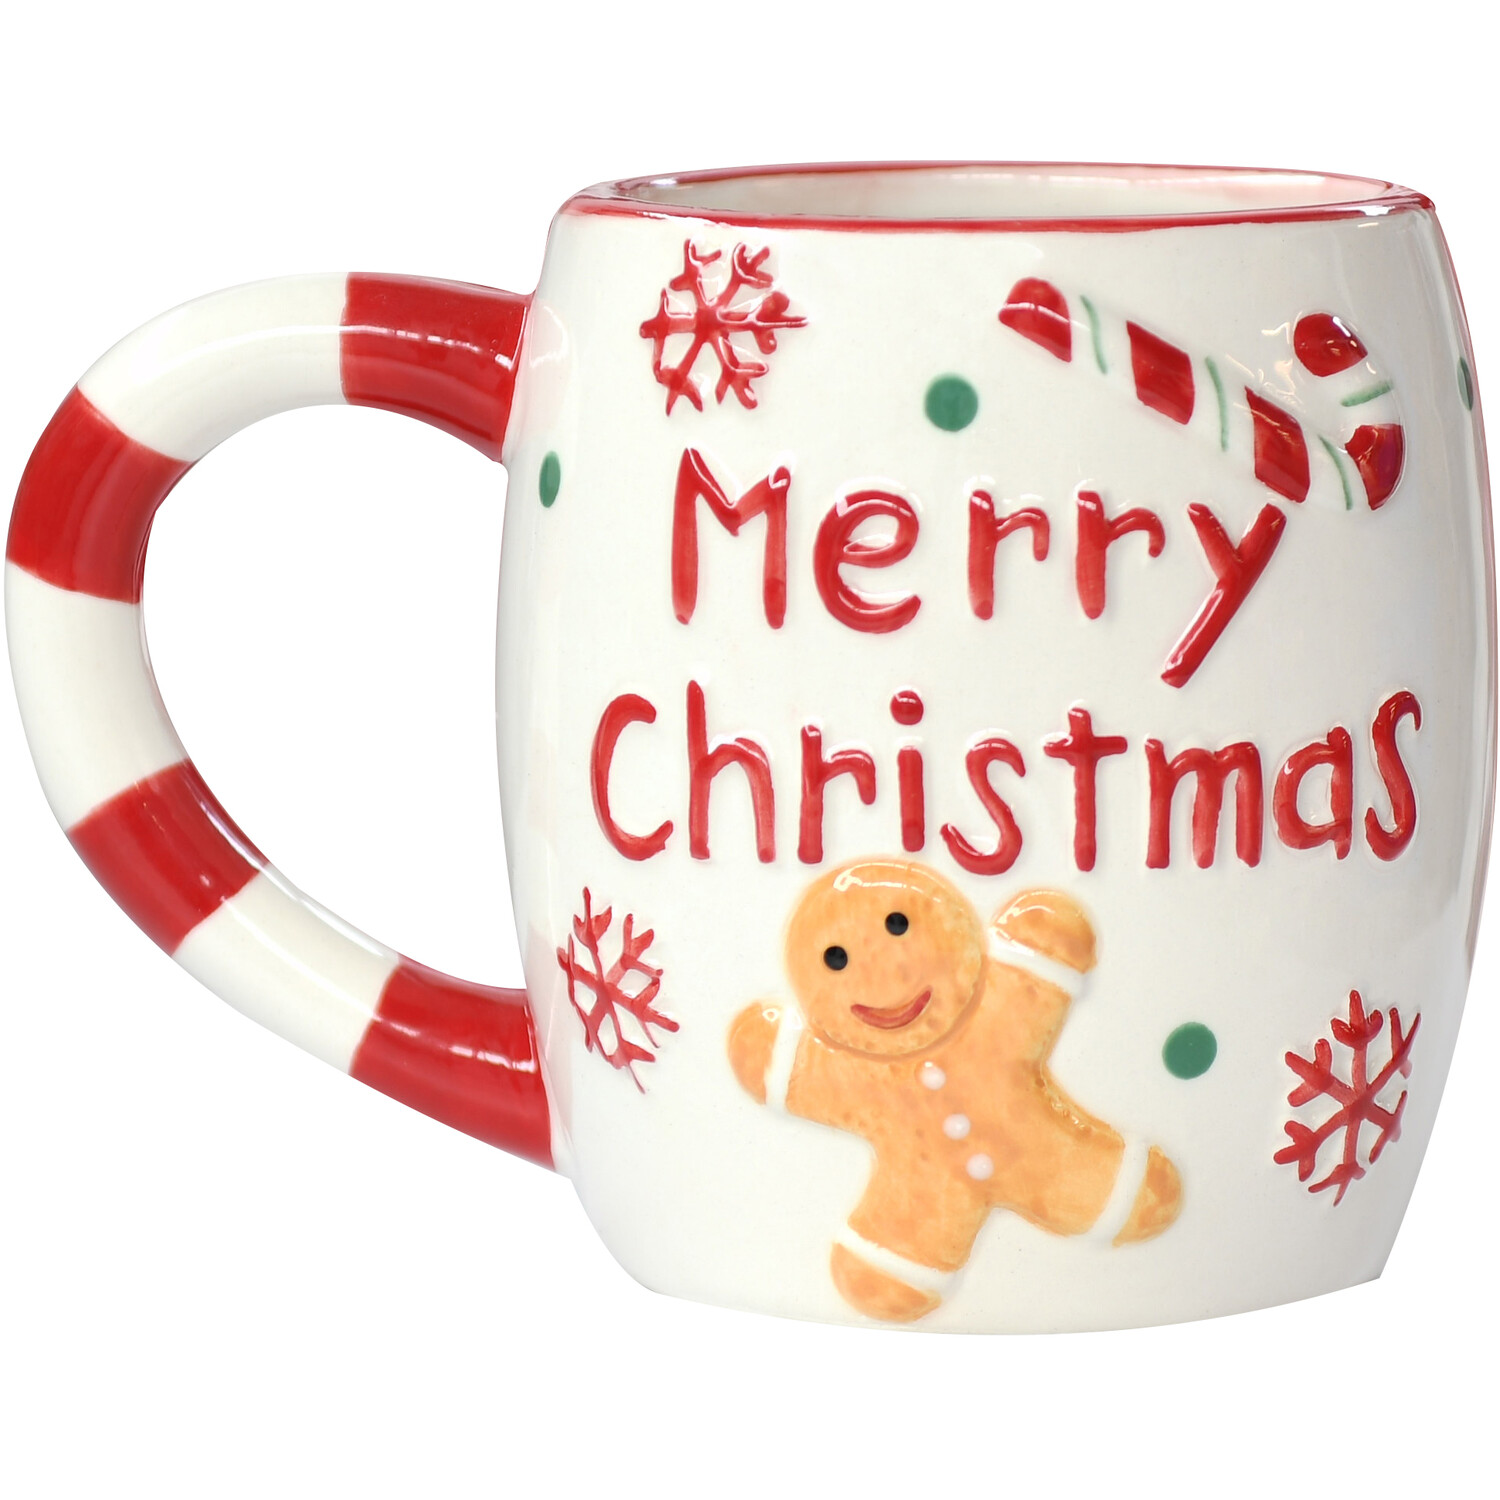 Christmas Kitchen Gingerbread Mug Image